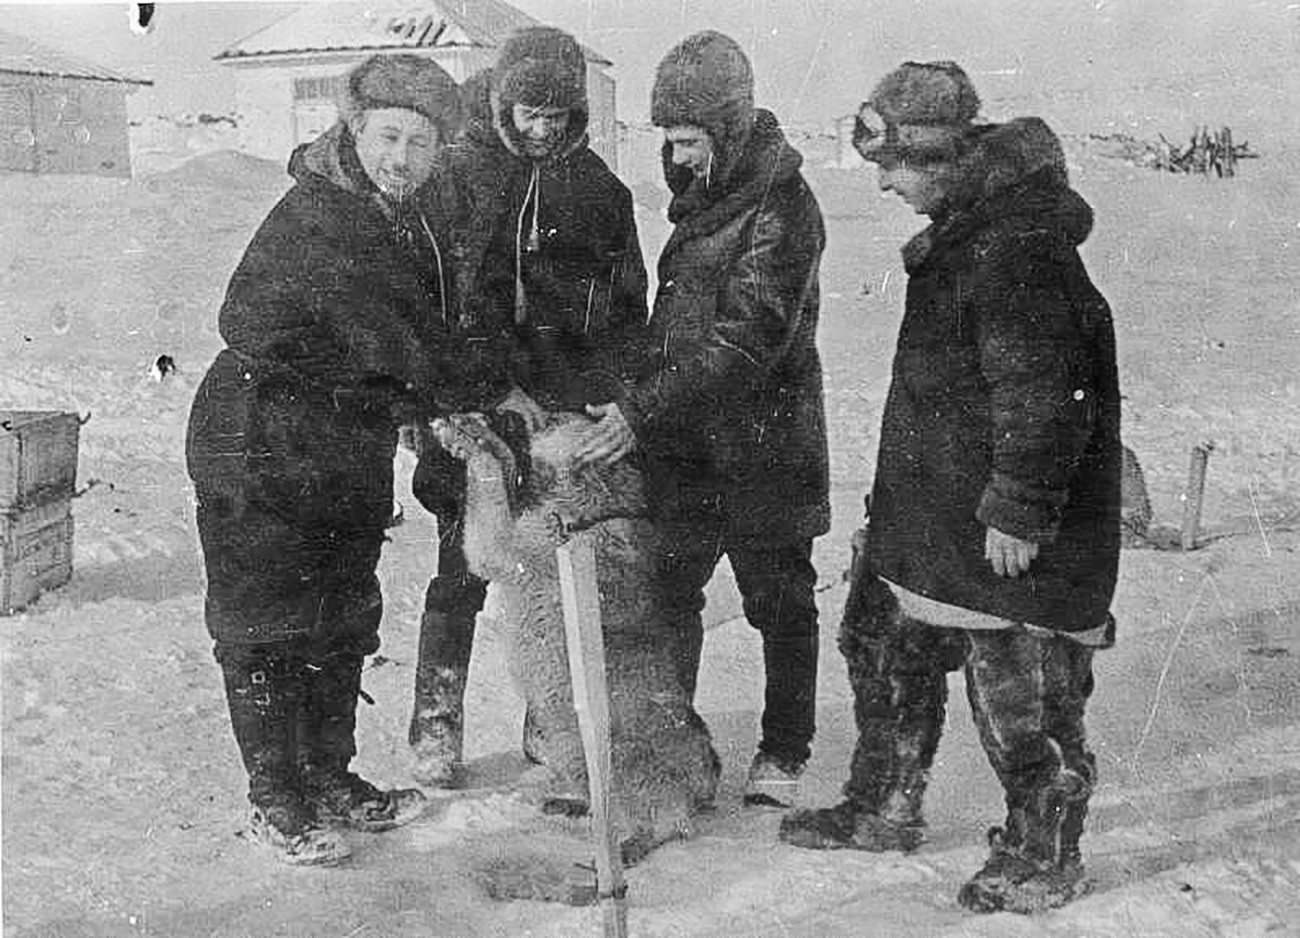 Експедиција се искрцала на лед 21. маја 1937. Плутајућа станица „Северни пол 1“ званично је отворена 6. јуна 1937. Пети „члан посаде“ је била поларна лајка, пас по имену Весели.